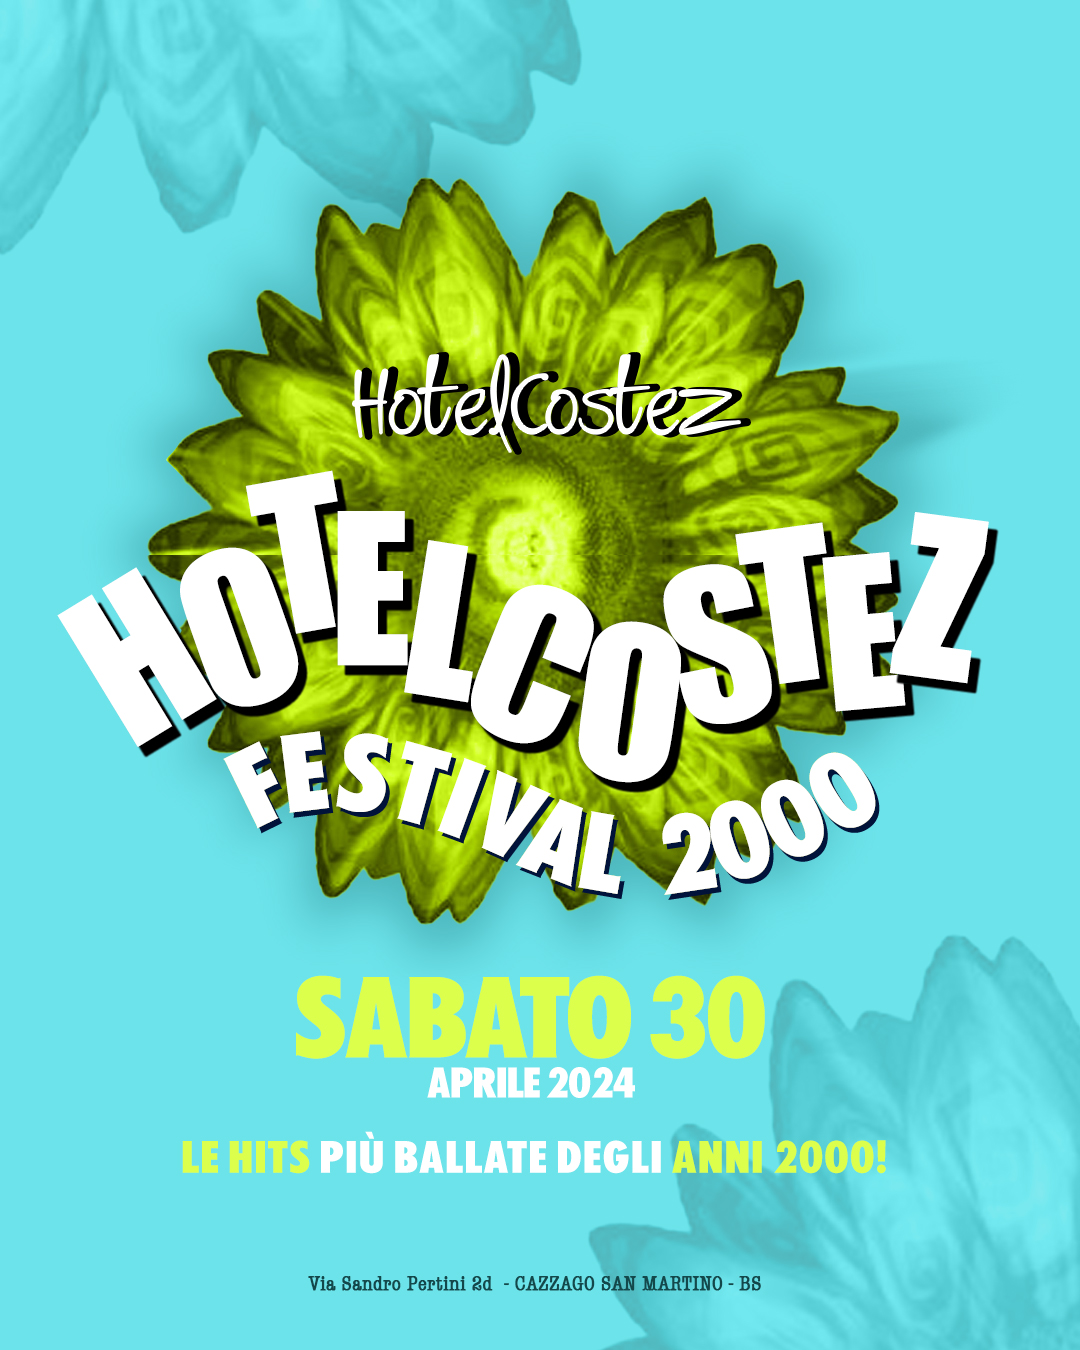 Festival 2000 flyer